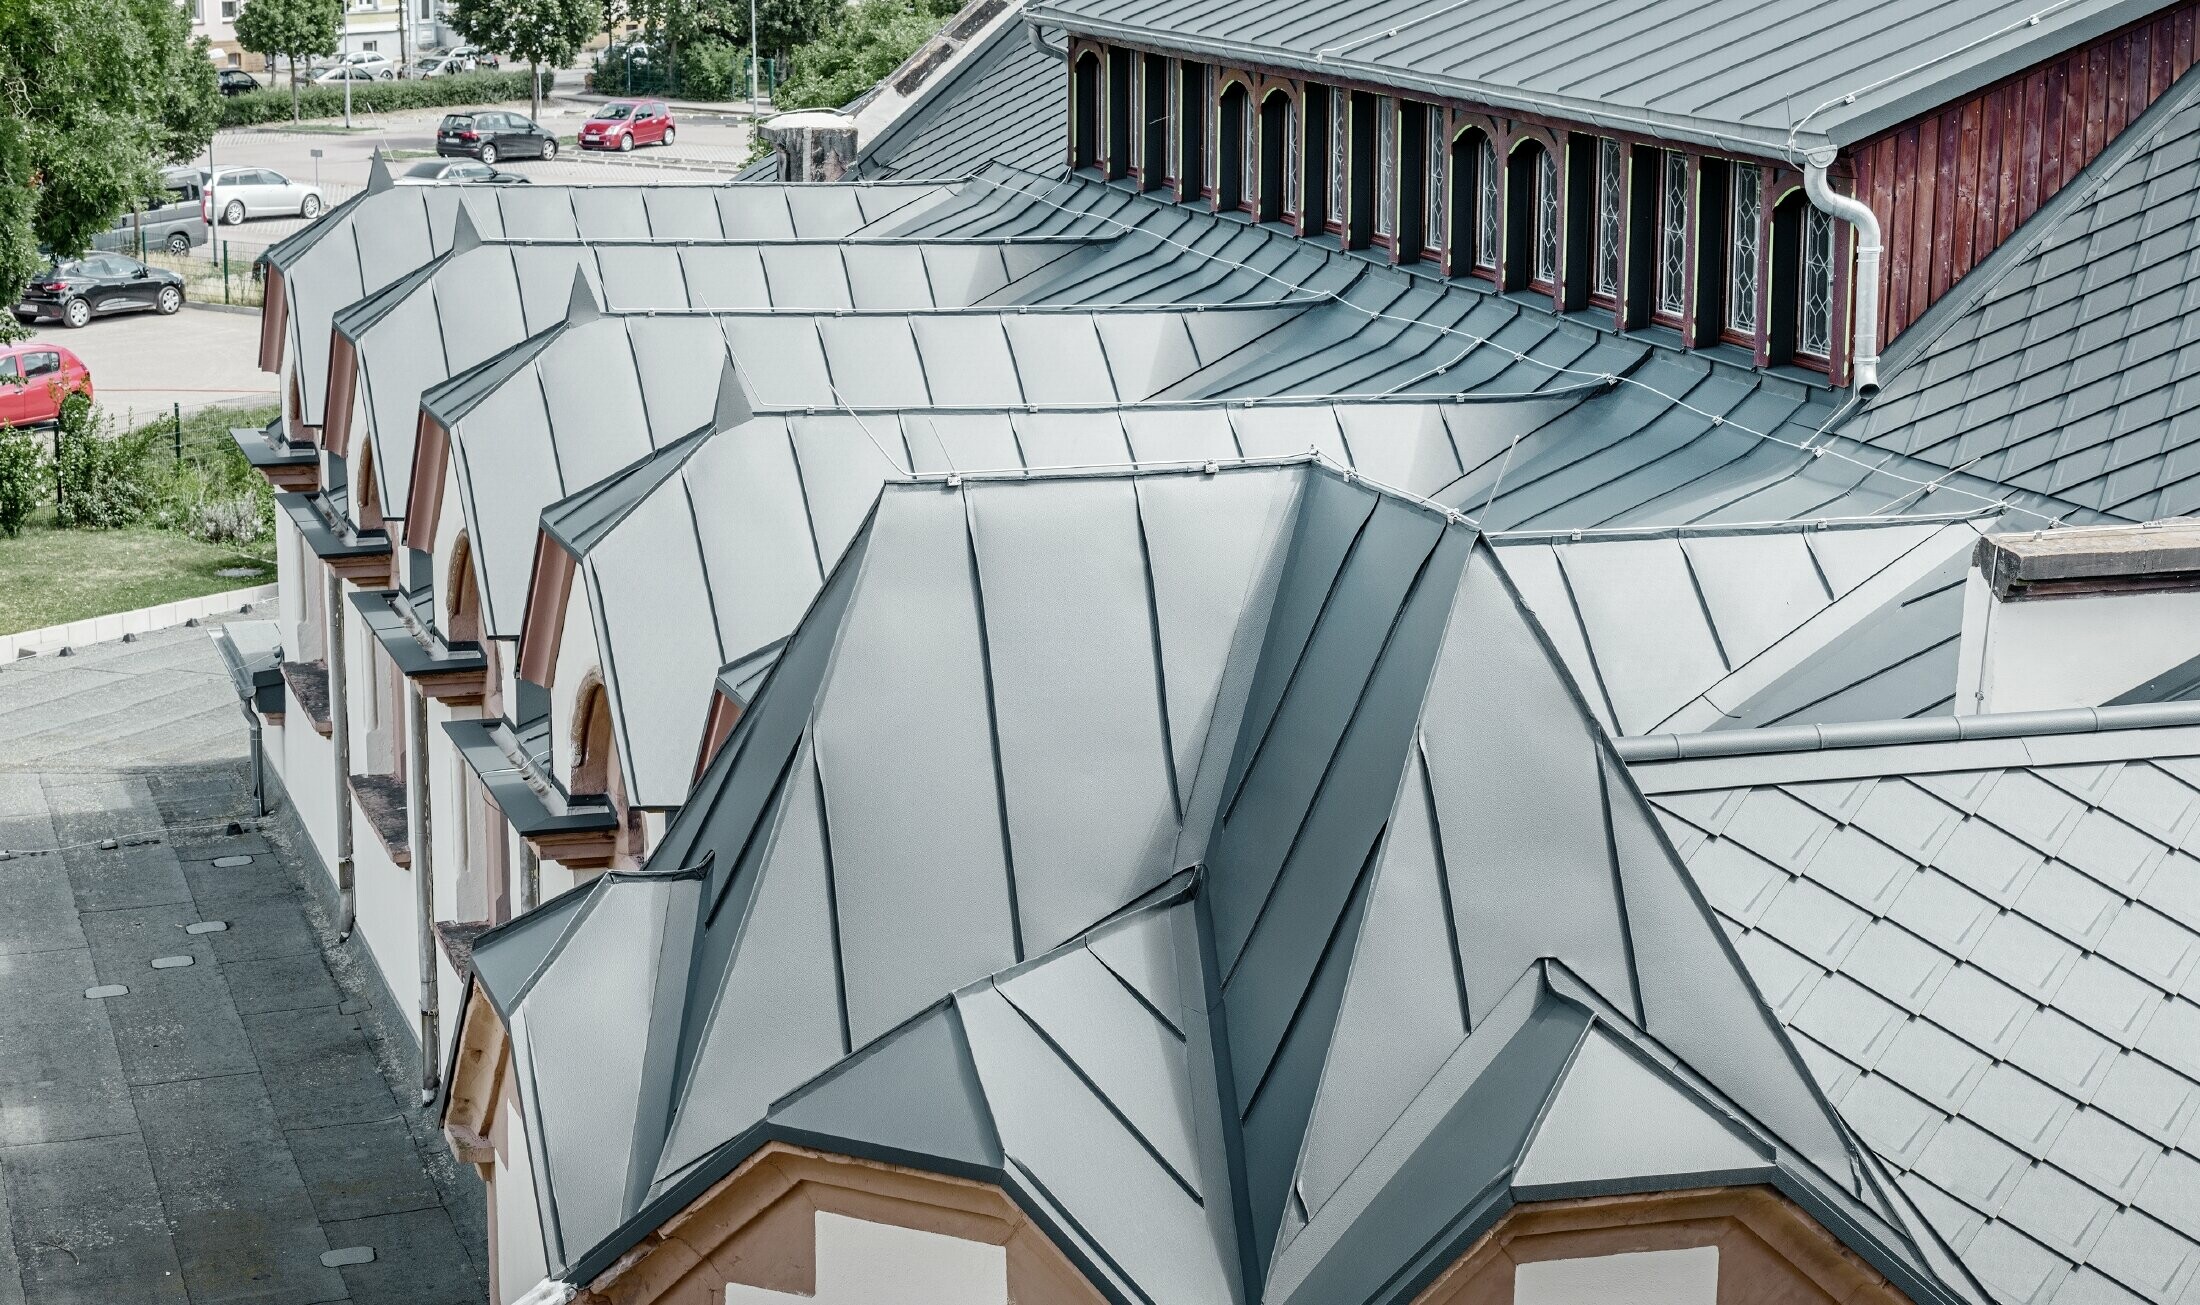 Świeżo wyremontowana hala sportowa szkoły Lutherstadt Wittenberg z aluminiowym dachem PREFA, wykonanym z dachówki romb i Prefalz w kolorze antracytu